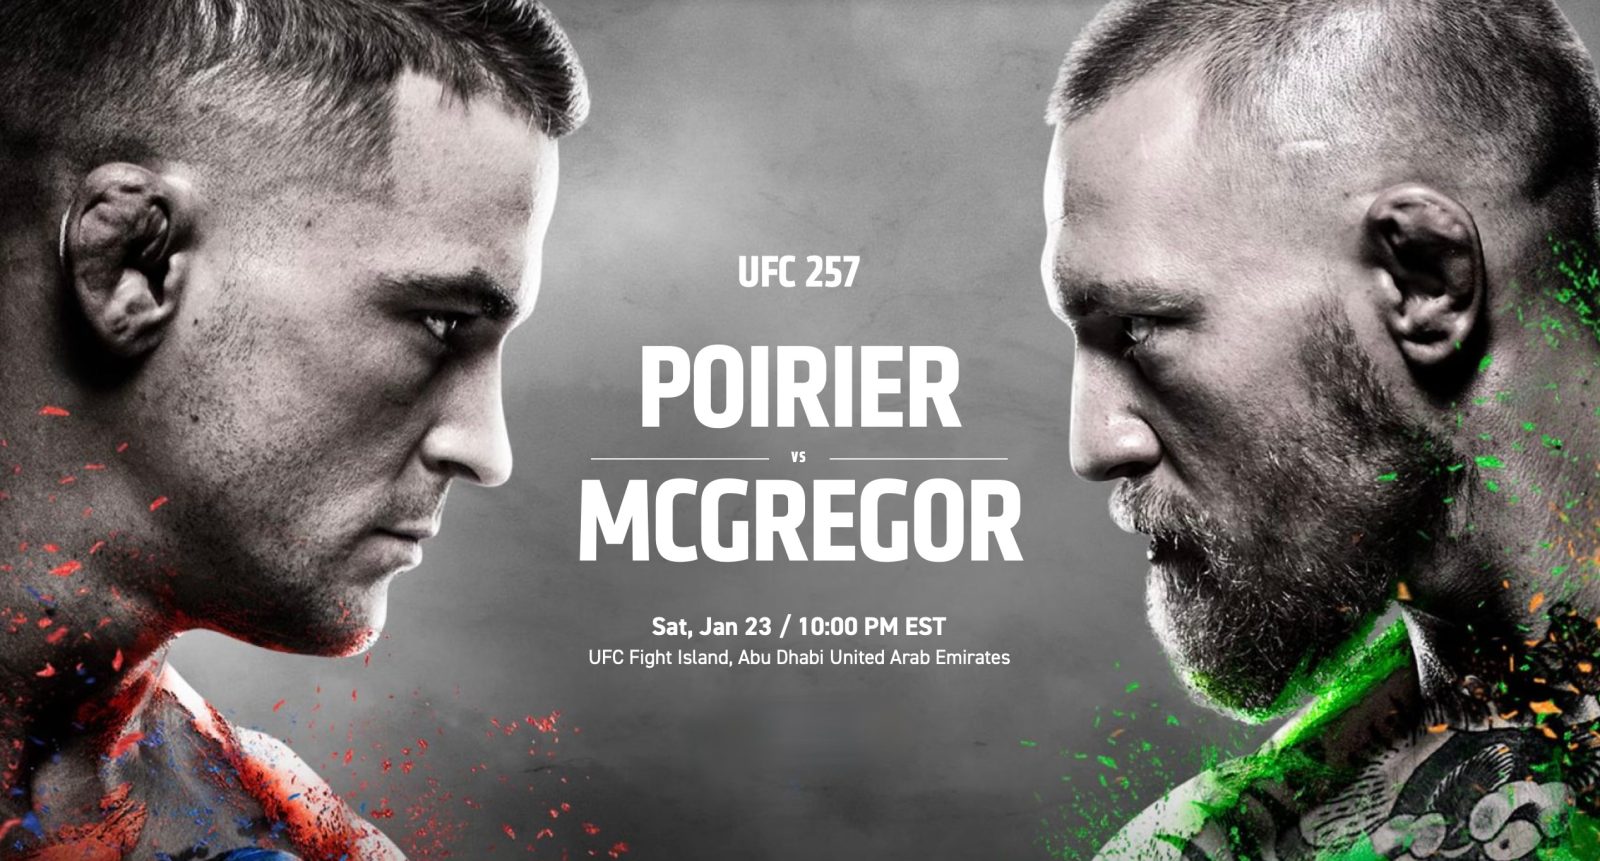 How to watch McGregor vs Poirier UFC 257 on iPhone, Mac, Apple TV, web